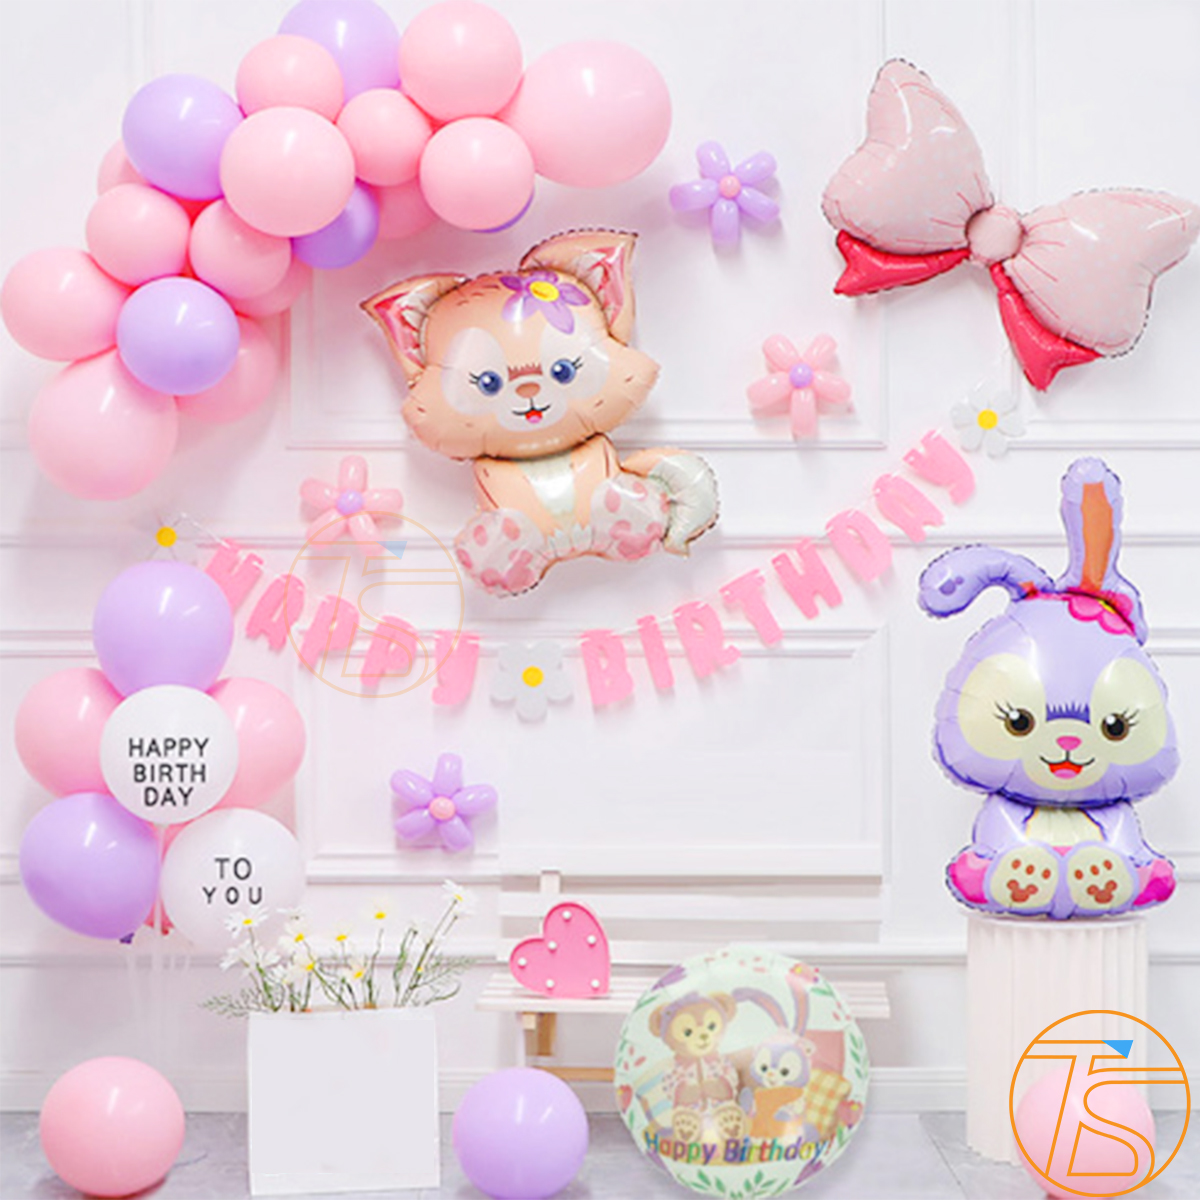 Set trang trí sinh nhật bong bóng thỏ và mèo cùng bộ chữ giấy Happy Birthday nhiều màu sắc cho bé kèm theo ống bơm